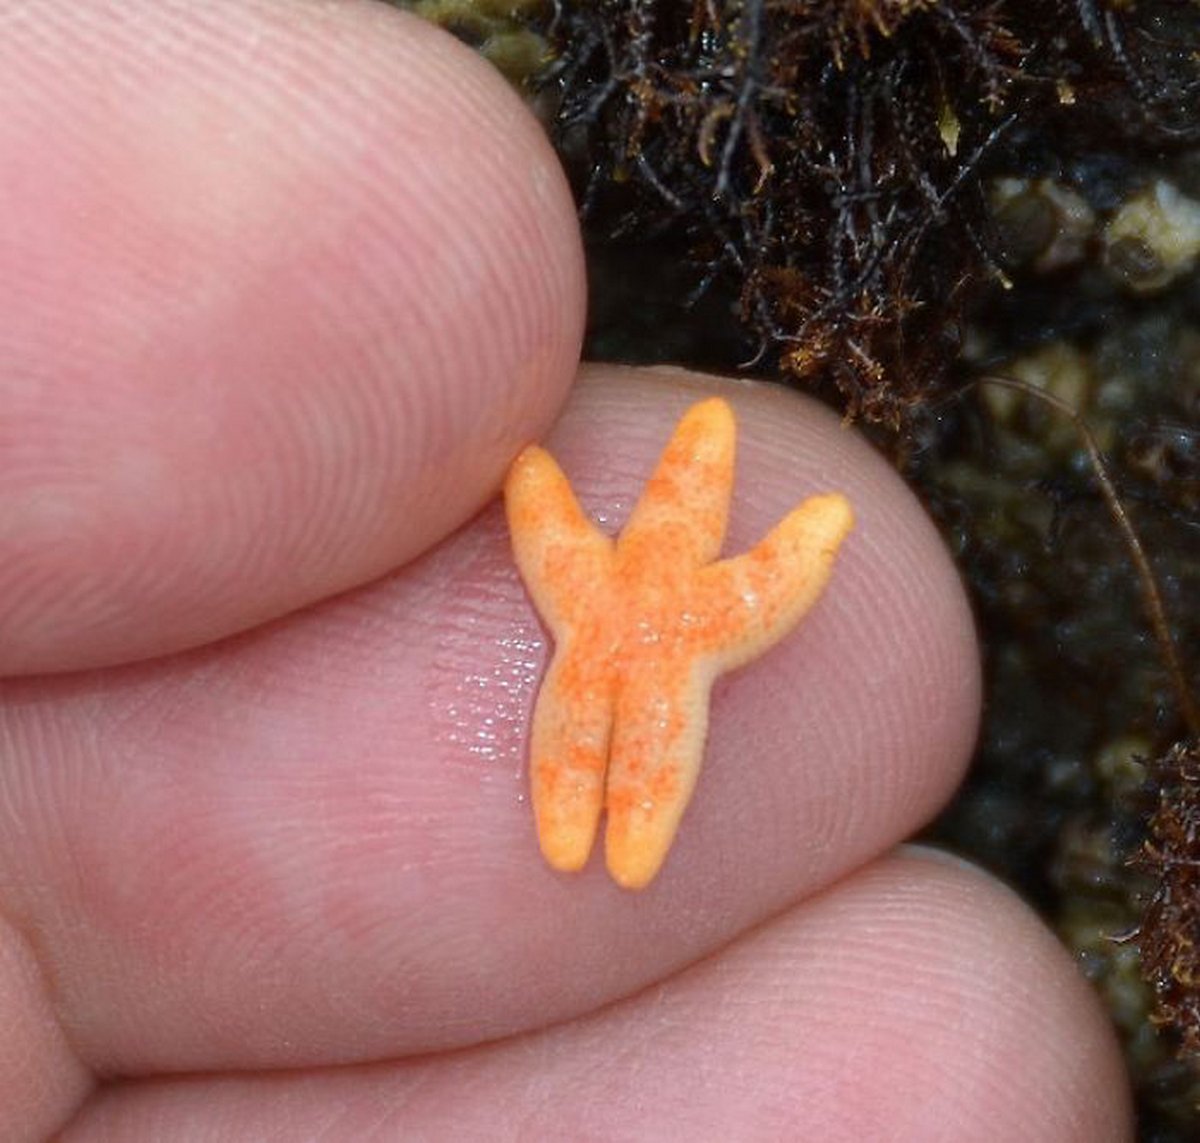 Voici des photos craquantes de très petits animaux sur les doigts de la main